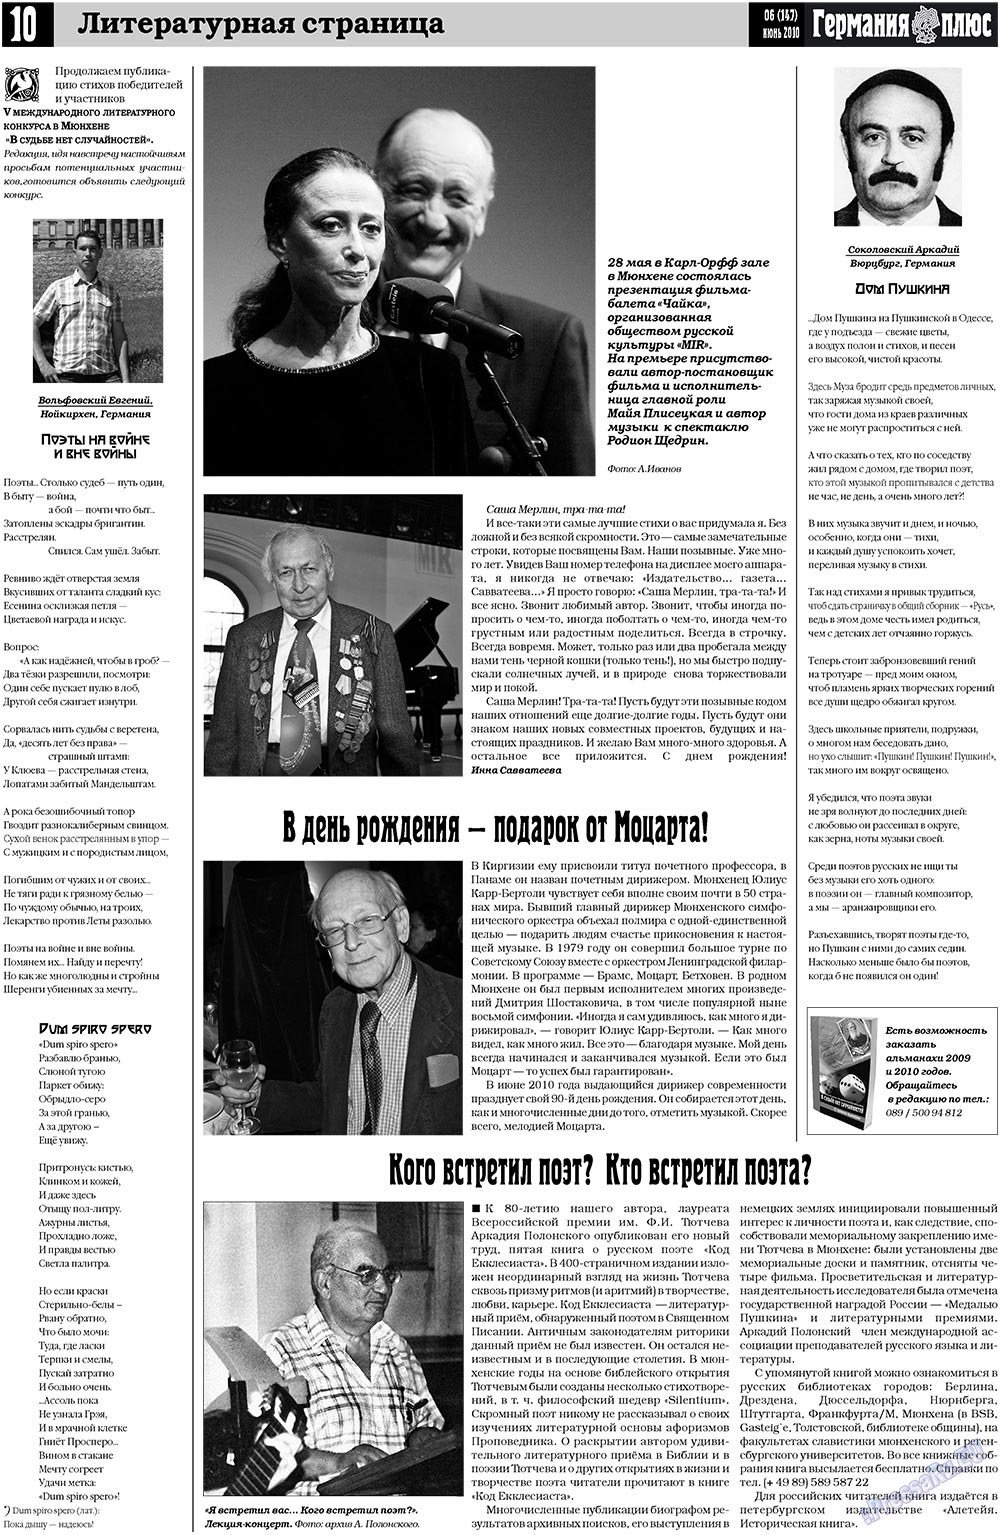 Германия плюс, газета. 2010 №6 стр.10